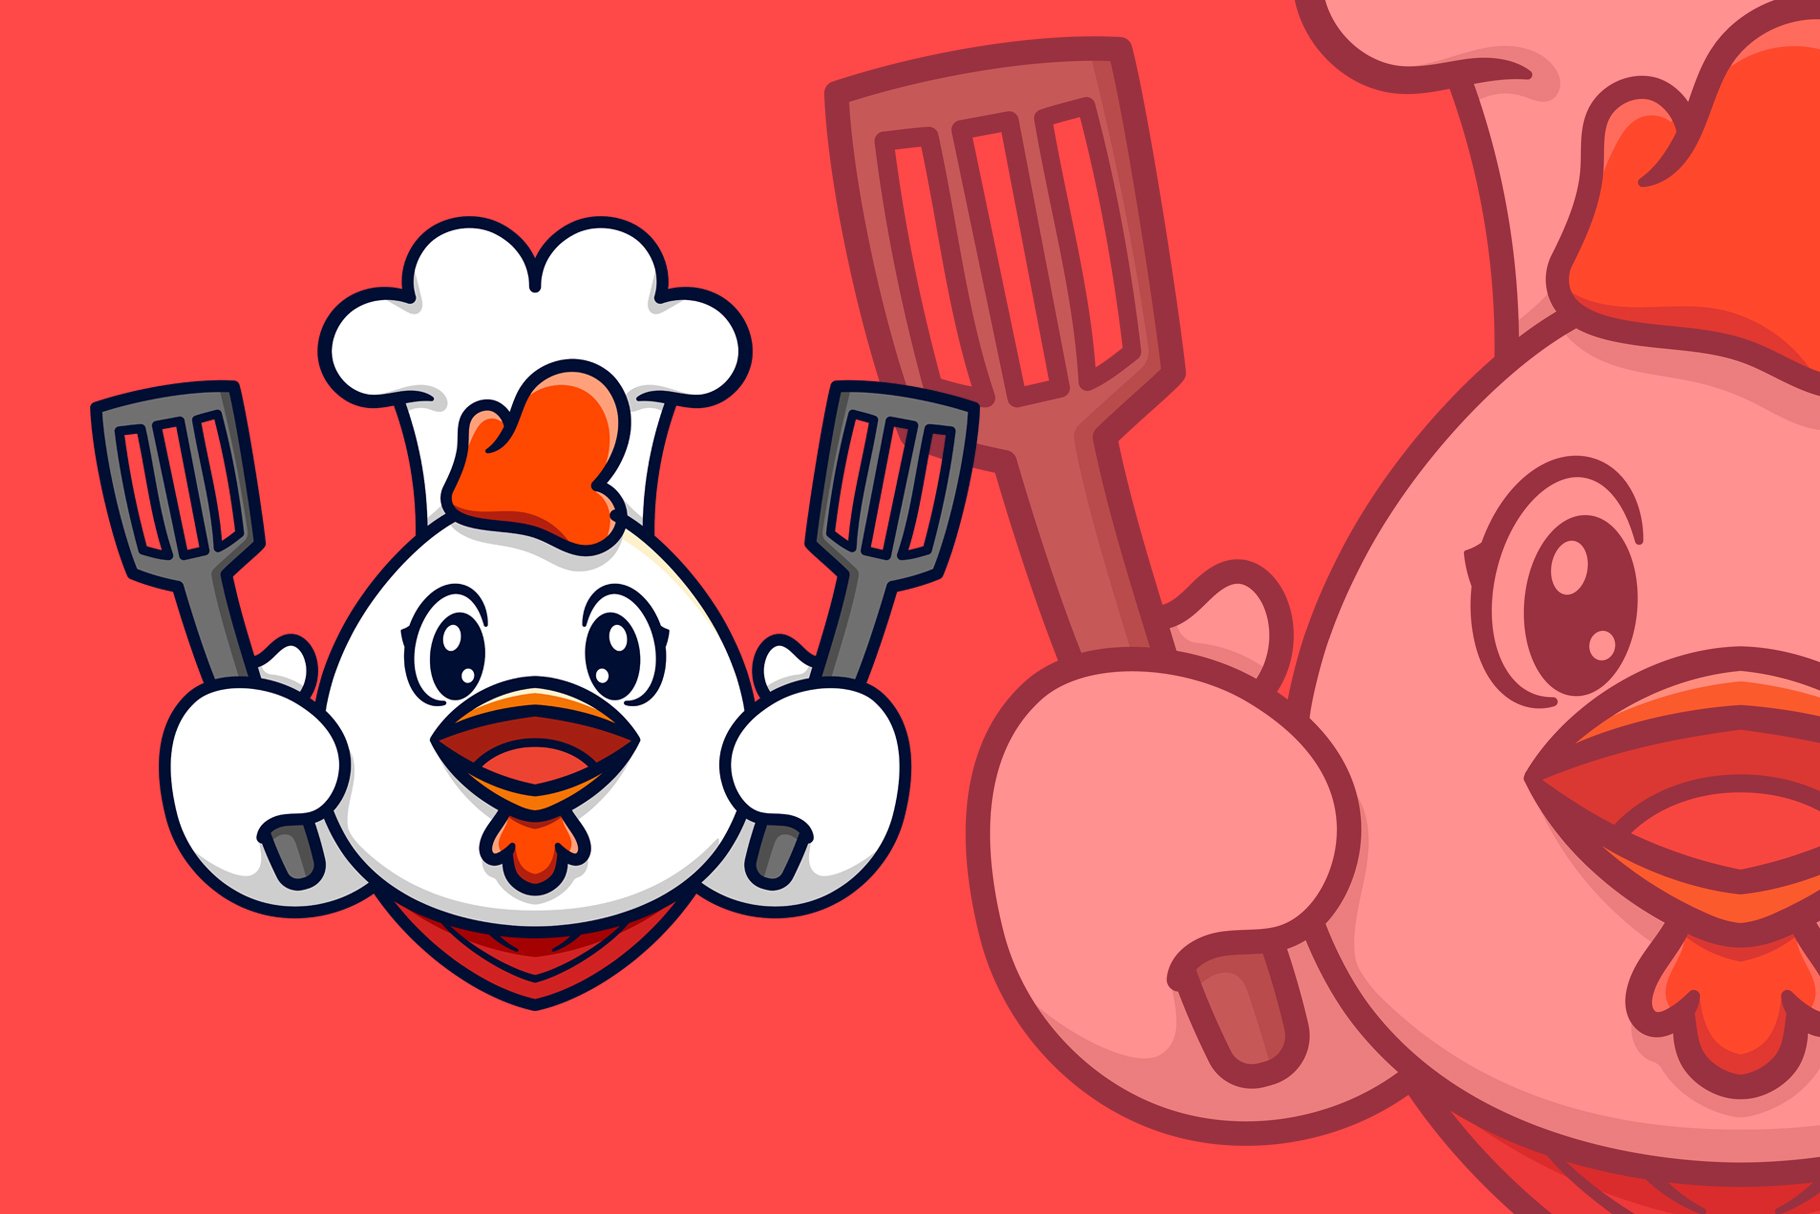 Chef Chicken Spatula Logo Mascot cover image.